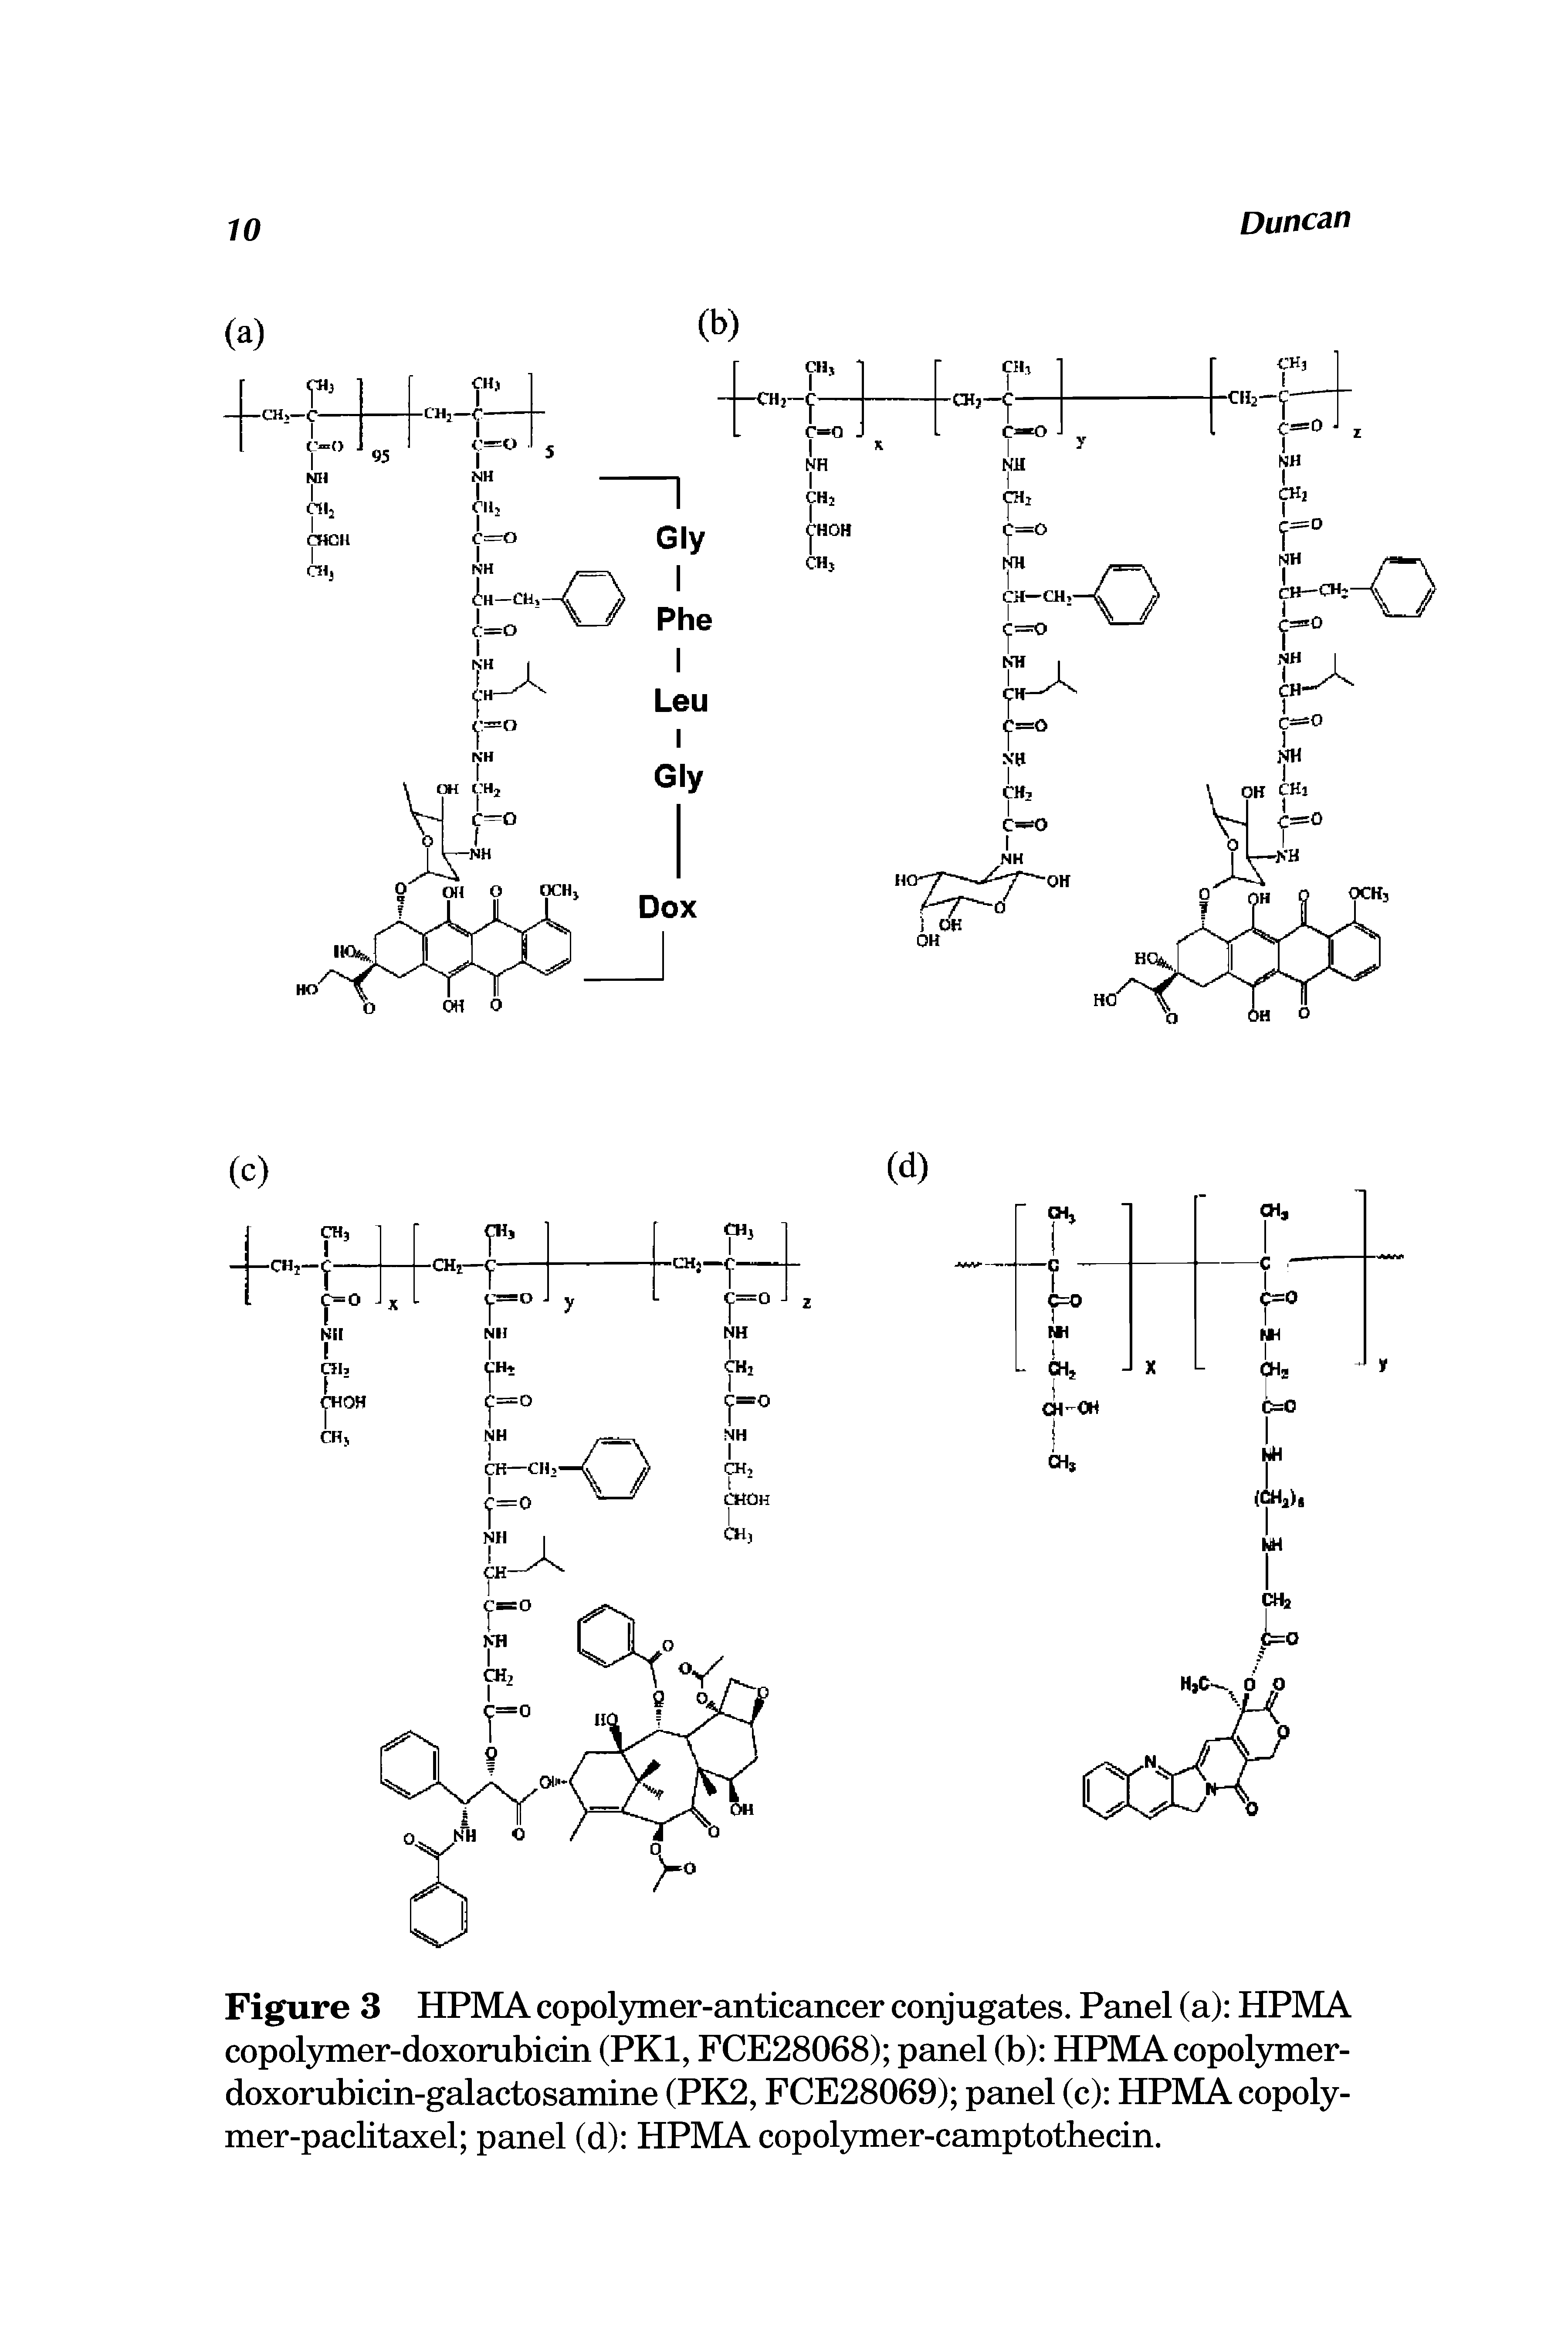 Figure 3 HPMA copolymer-anticancer conjugates. Panel (a) HPMA copol3mier-doxorubicin (PKl, FCE28068) panel (b) HPMAcopolymer-doxorubicin-galactosamine (PK2, FCE28069) panel (c) HPMAcopoly-mer-paclitaxel panel (d) HPMA copolymer-camptothecin.